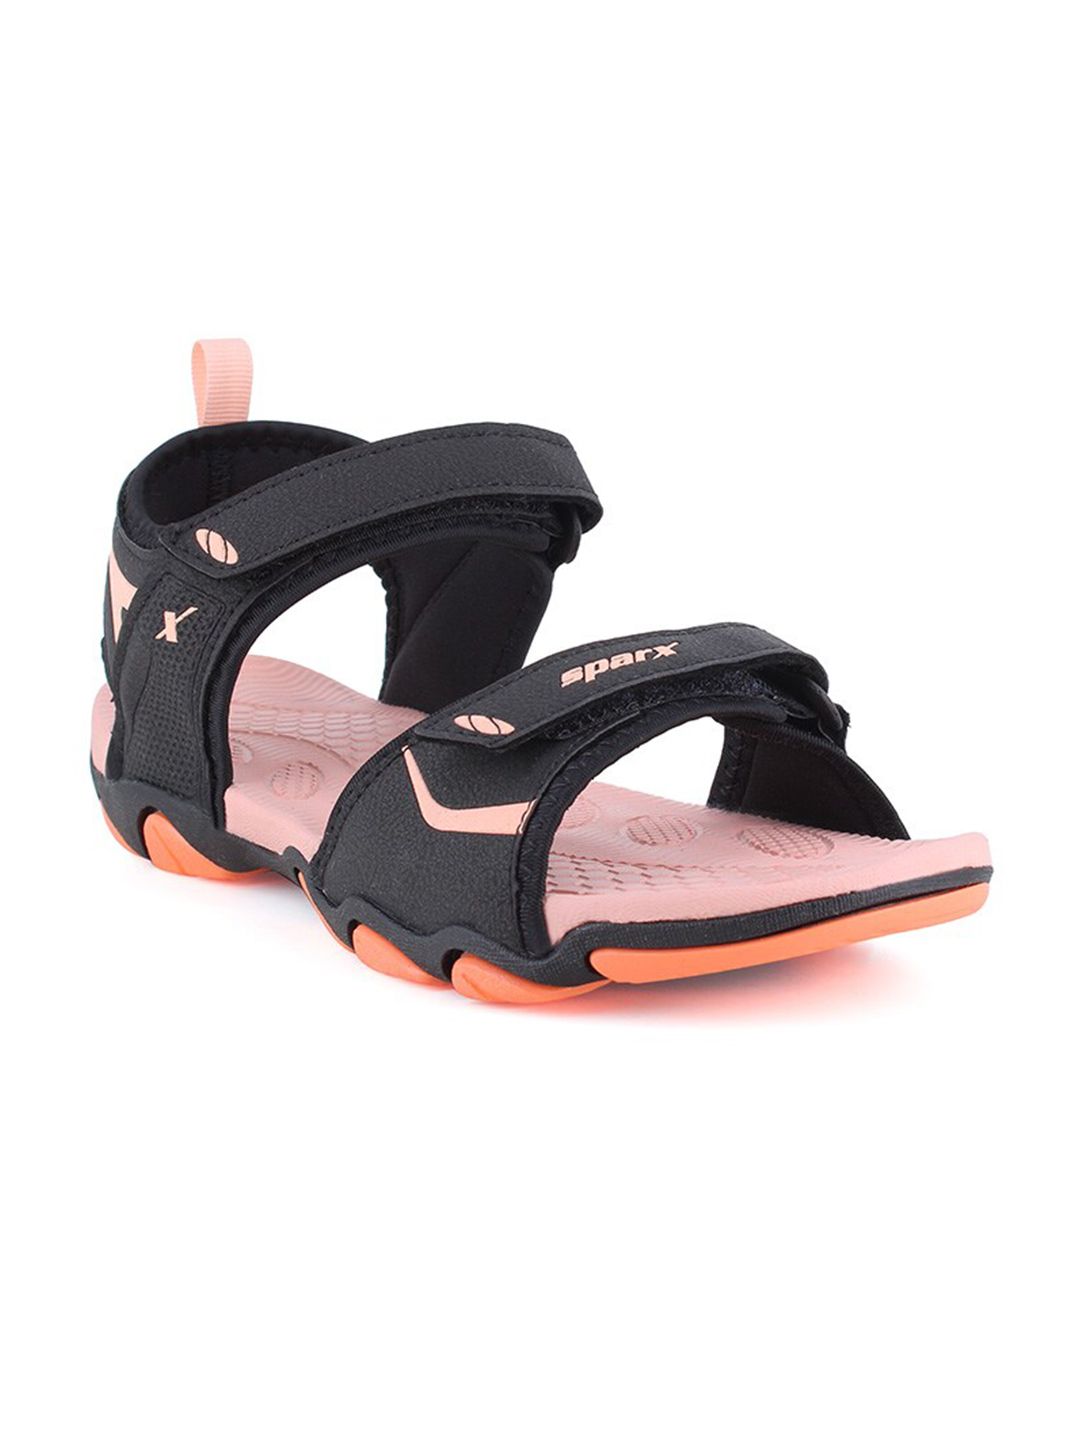 Sparx Women Black & Peach-Coloured Comfort Sandals Price in India